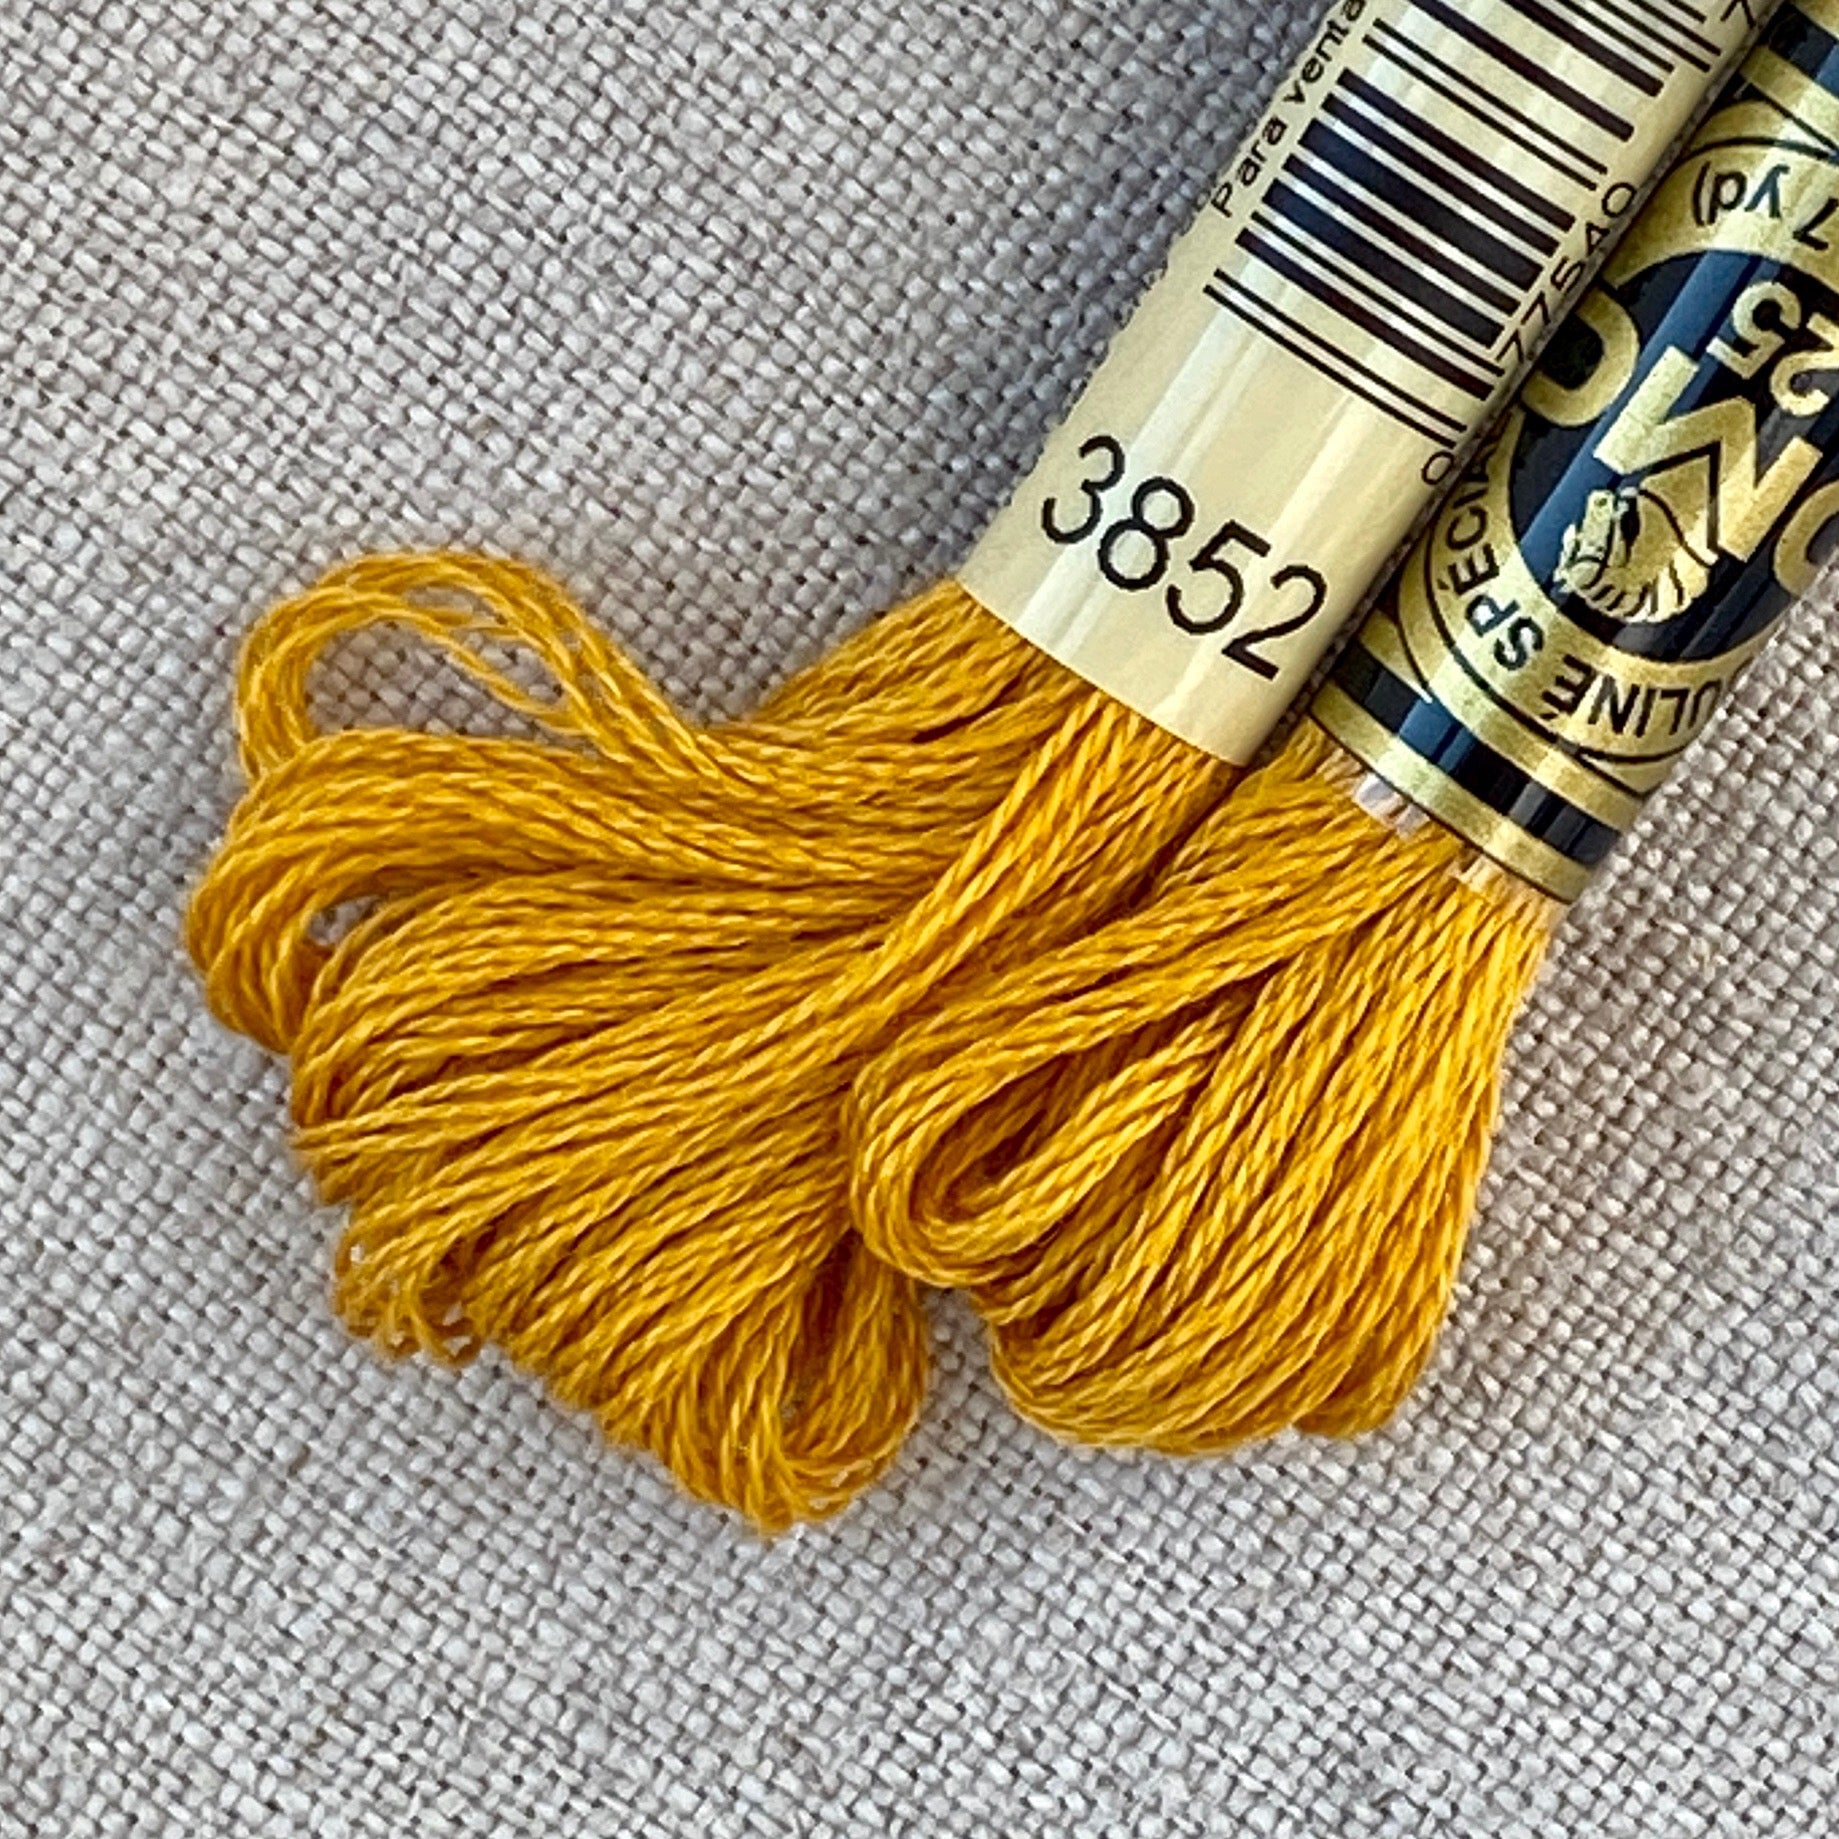 DMC Senso Crochet Quick Finish Yarn 1402 Yellow Gold Lot 153872 Metallic 3  Balls